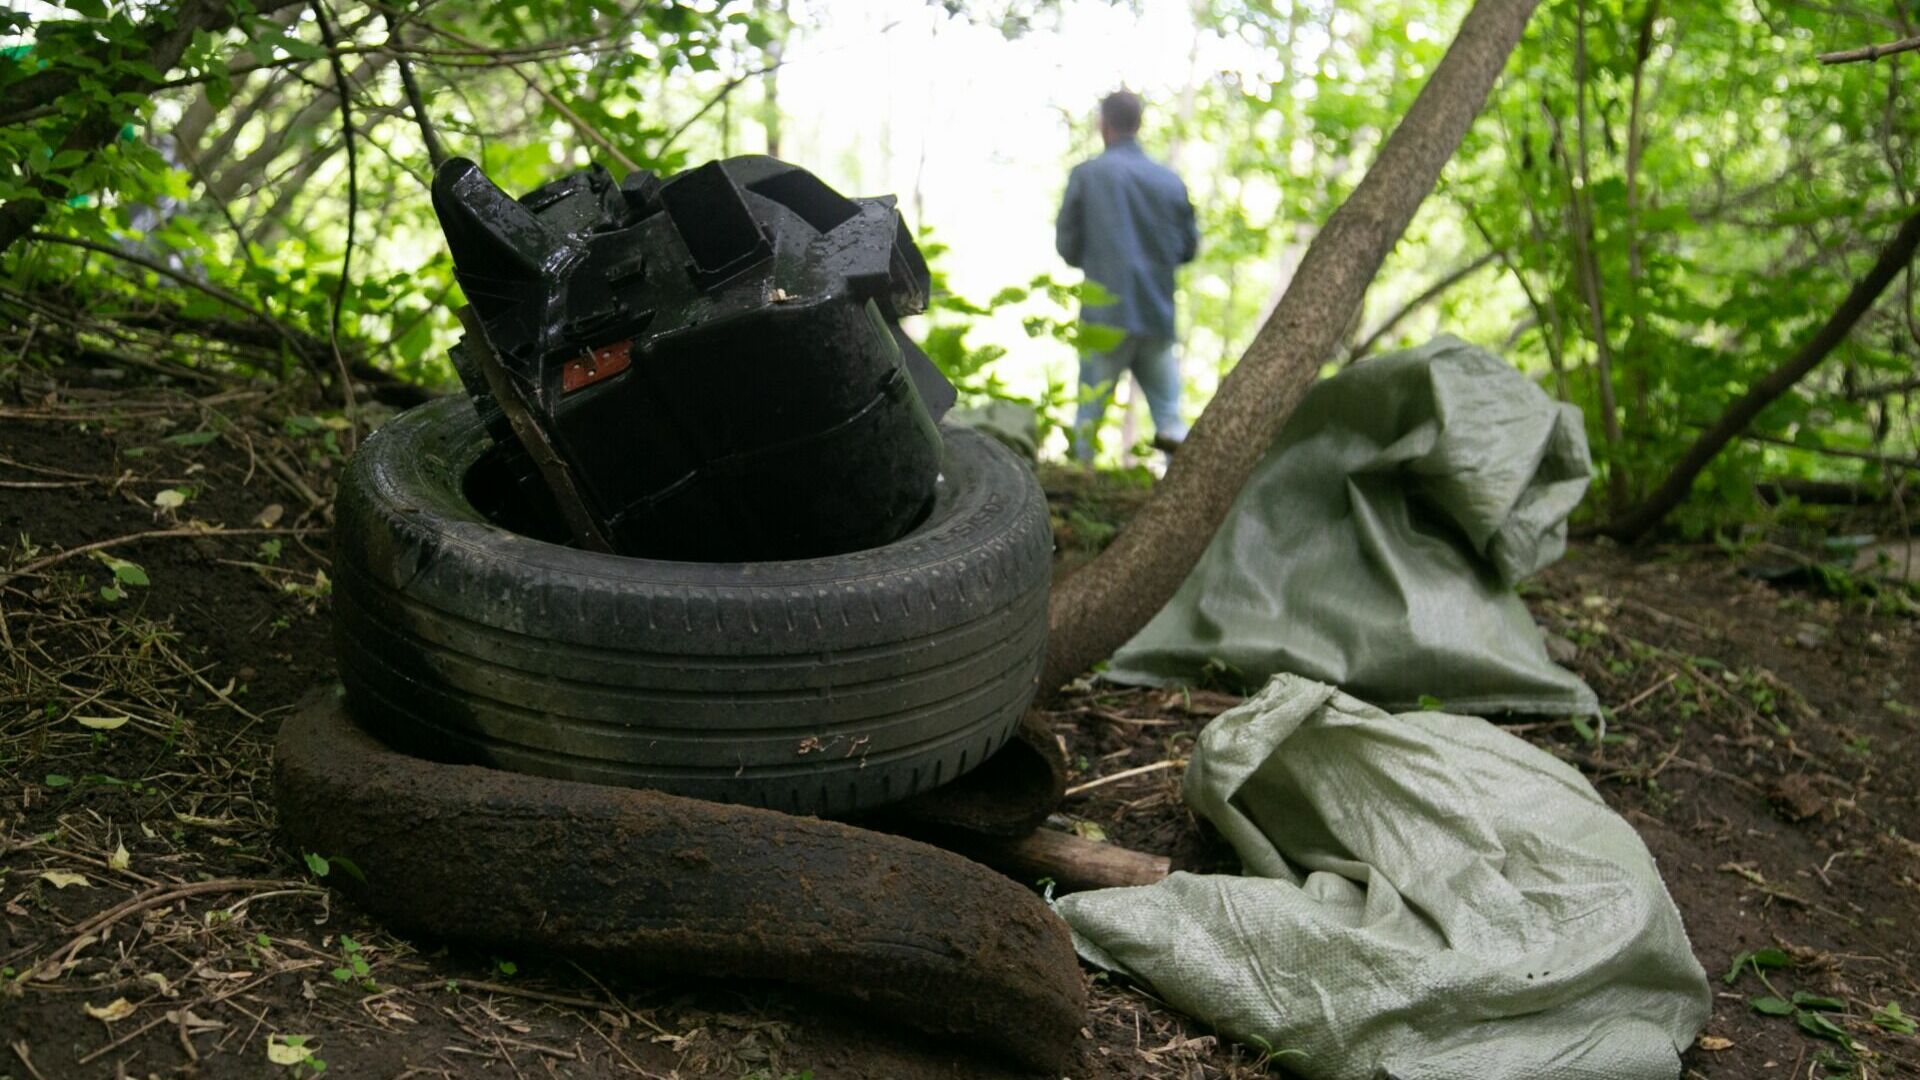 Гладков поручил закончить весеннюю уборку в Белгородской области до 1 мая